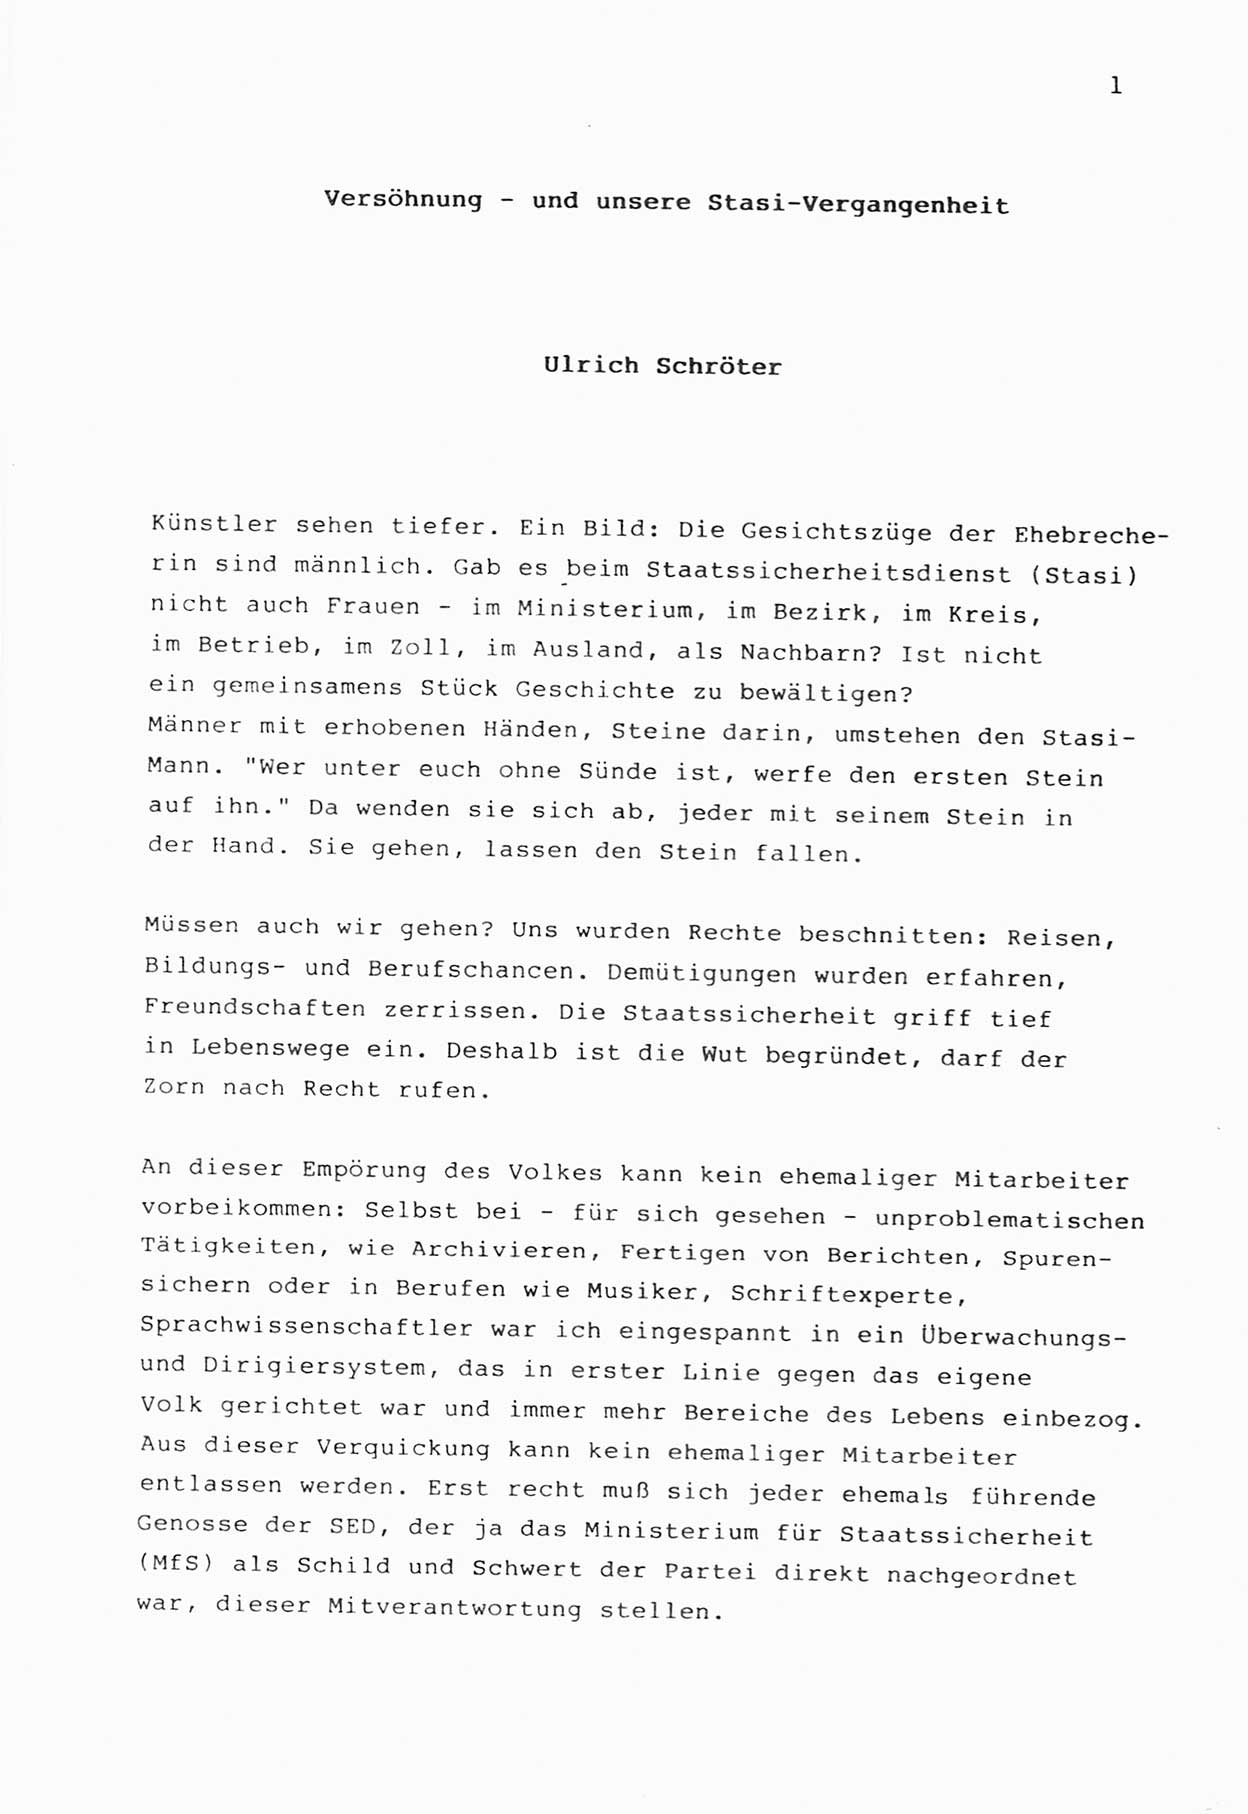 Zwie-Gespräch, Beiträge zur Bewältigung der Stasi-Vergangenheit [Deutsche Demokratische Republik (DDR)], Ausgabe Nr. 1, Berlin 1991, Seite 1 (Zwie-Gespr. Ausg. 1 1991, S. 1)